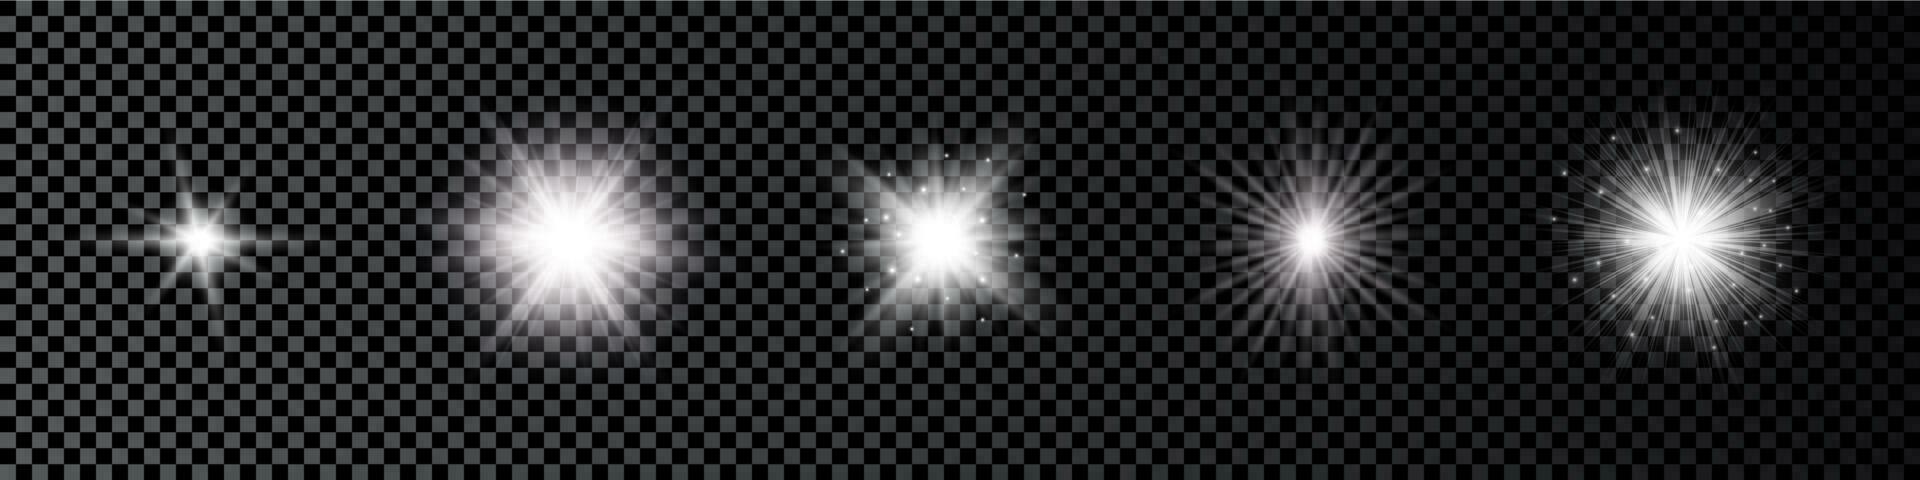 ljus effekt av lins bloss. uppsättning av fem vit lysande lampor starburst effekter med pärlar på en mörk vektor